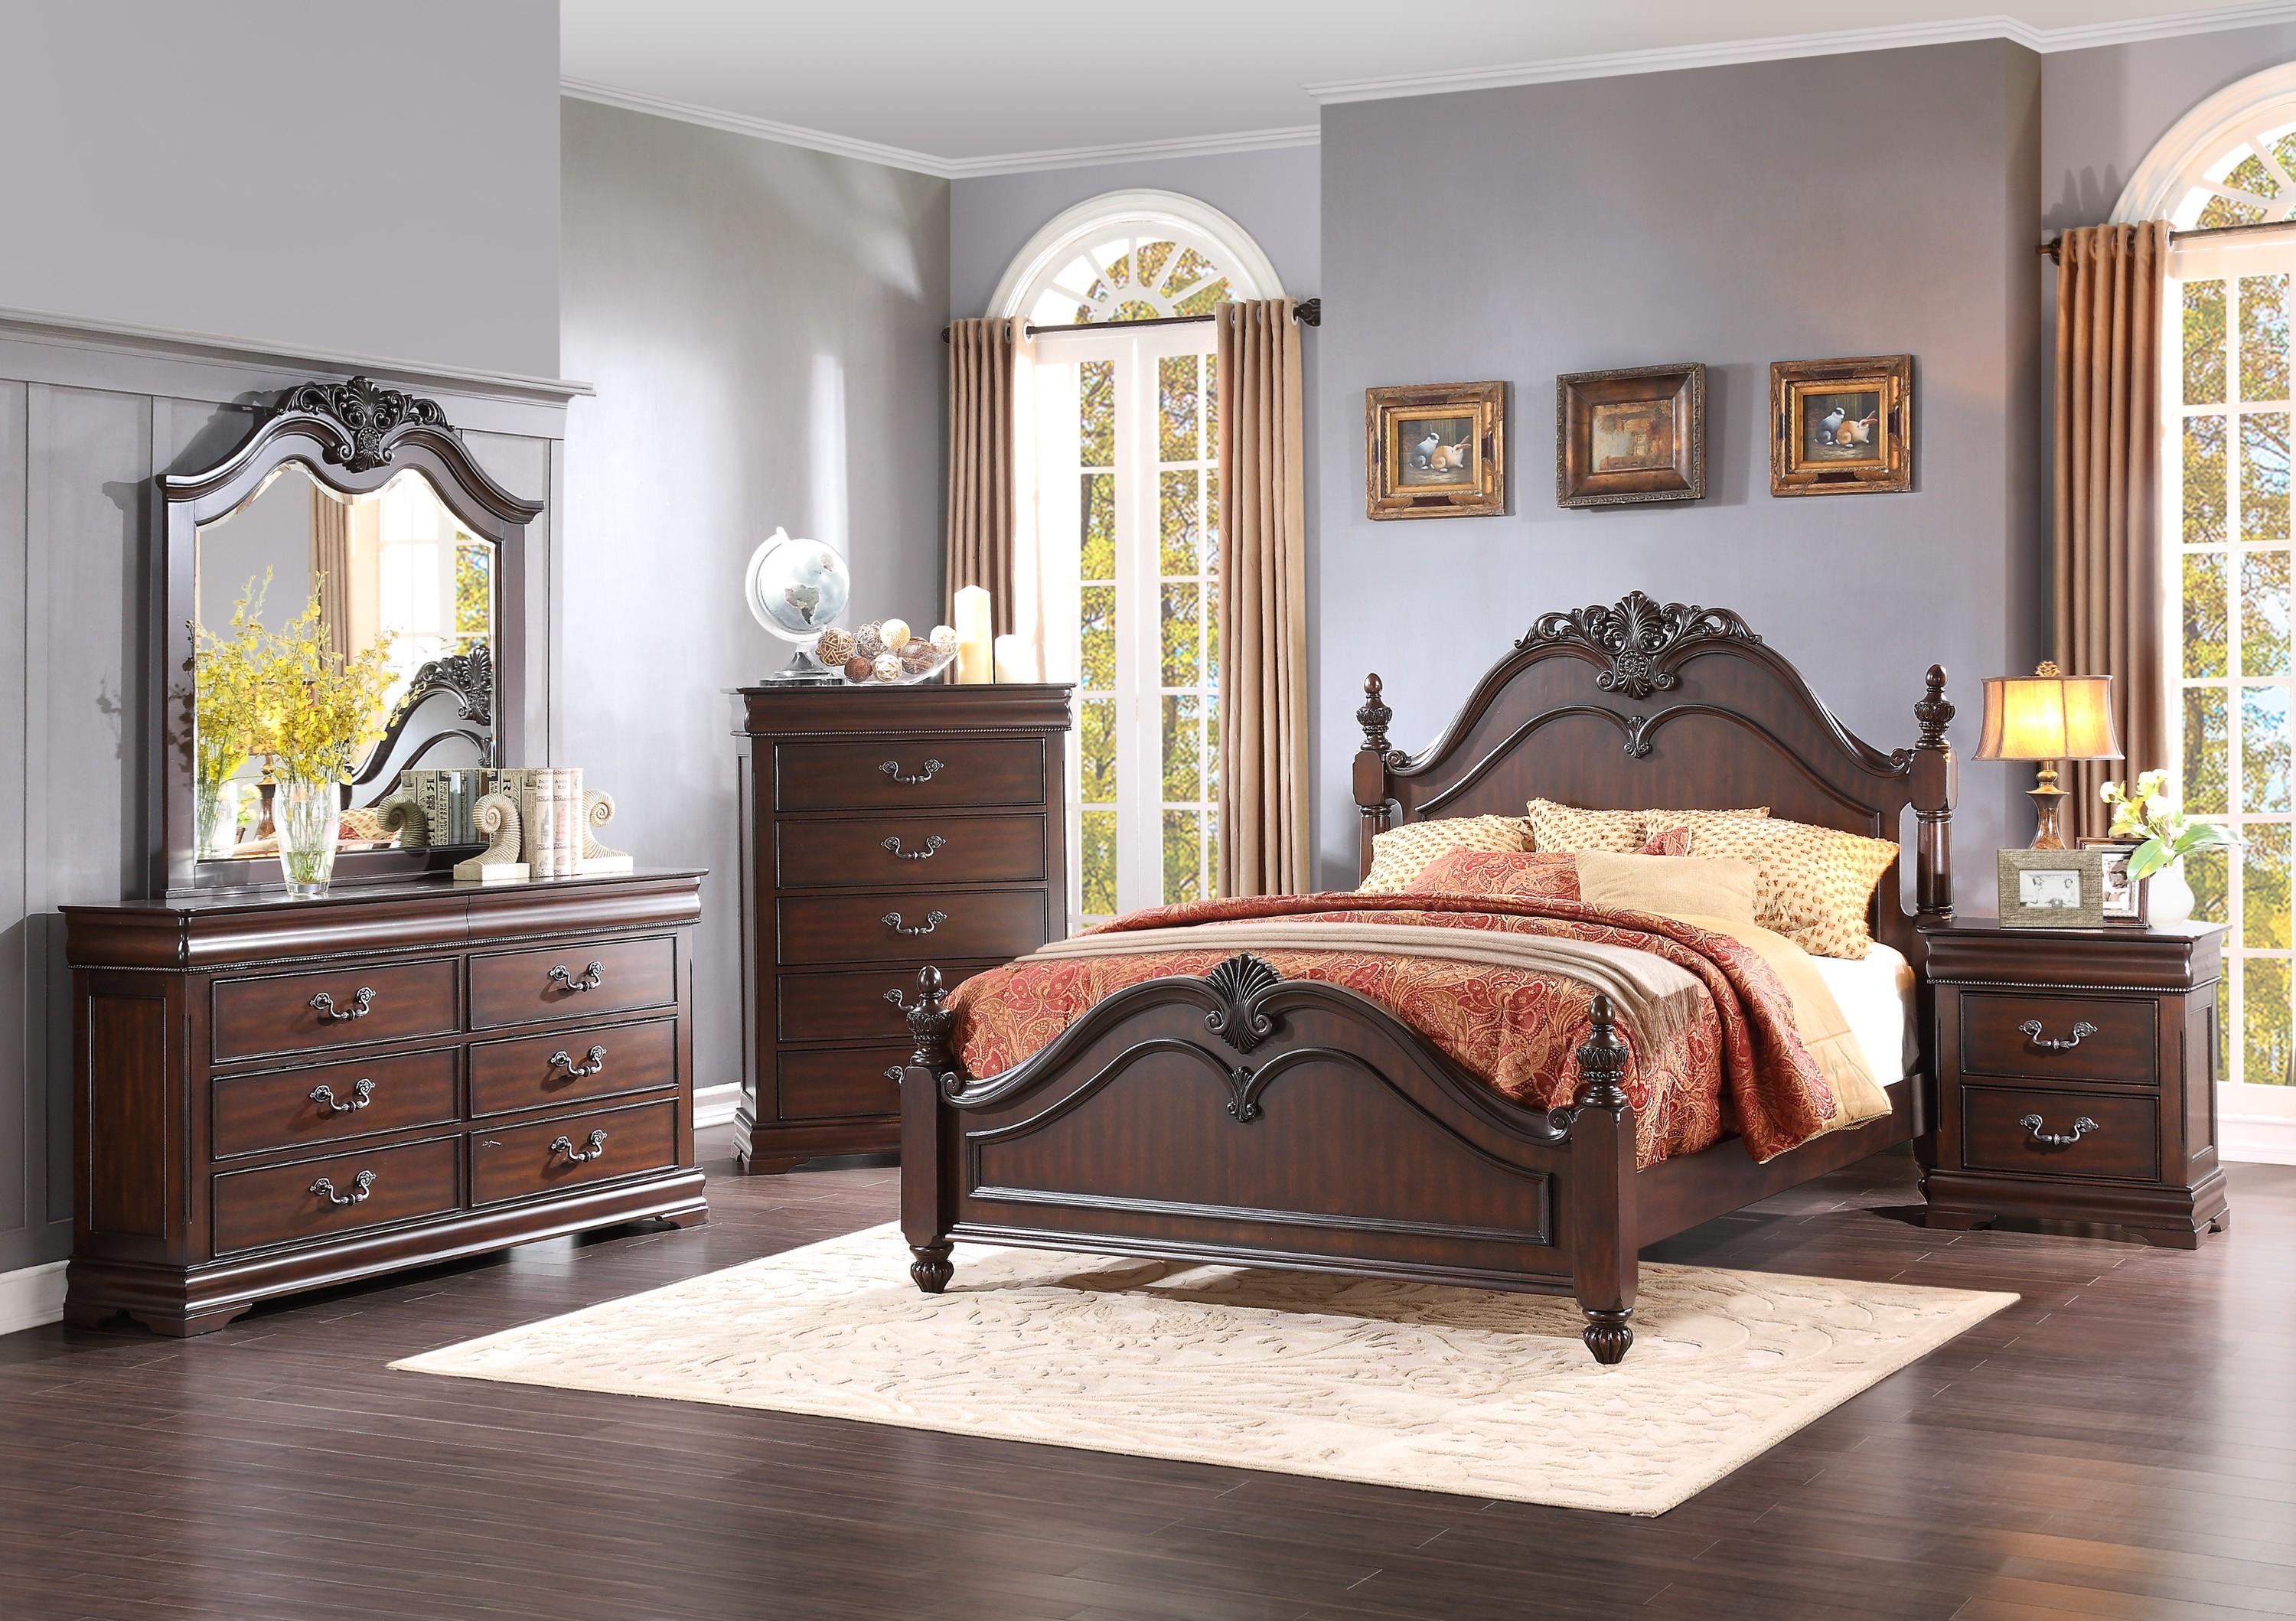 

    
Traditional Dark Cherry Wood Queen Bedroom Set 6pcs Homelegance 1869-1* Mont Belvieu
